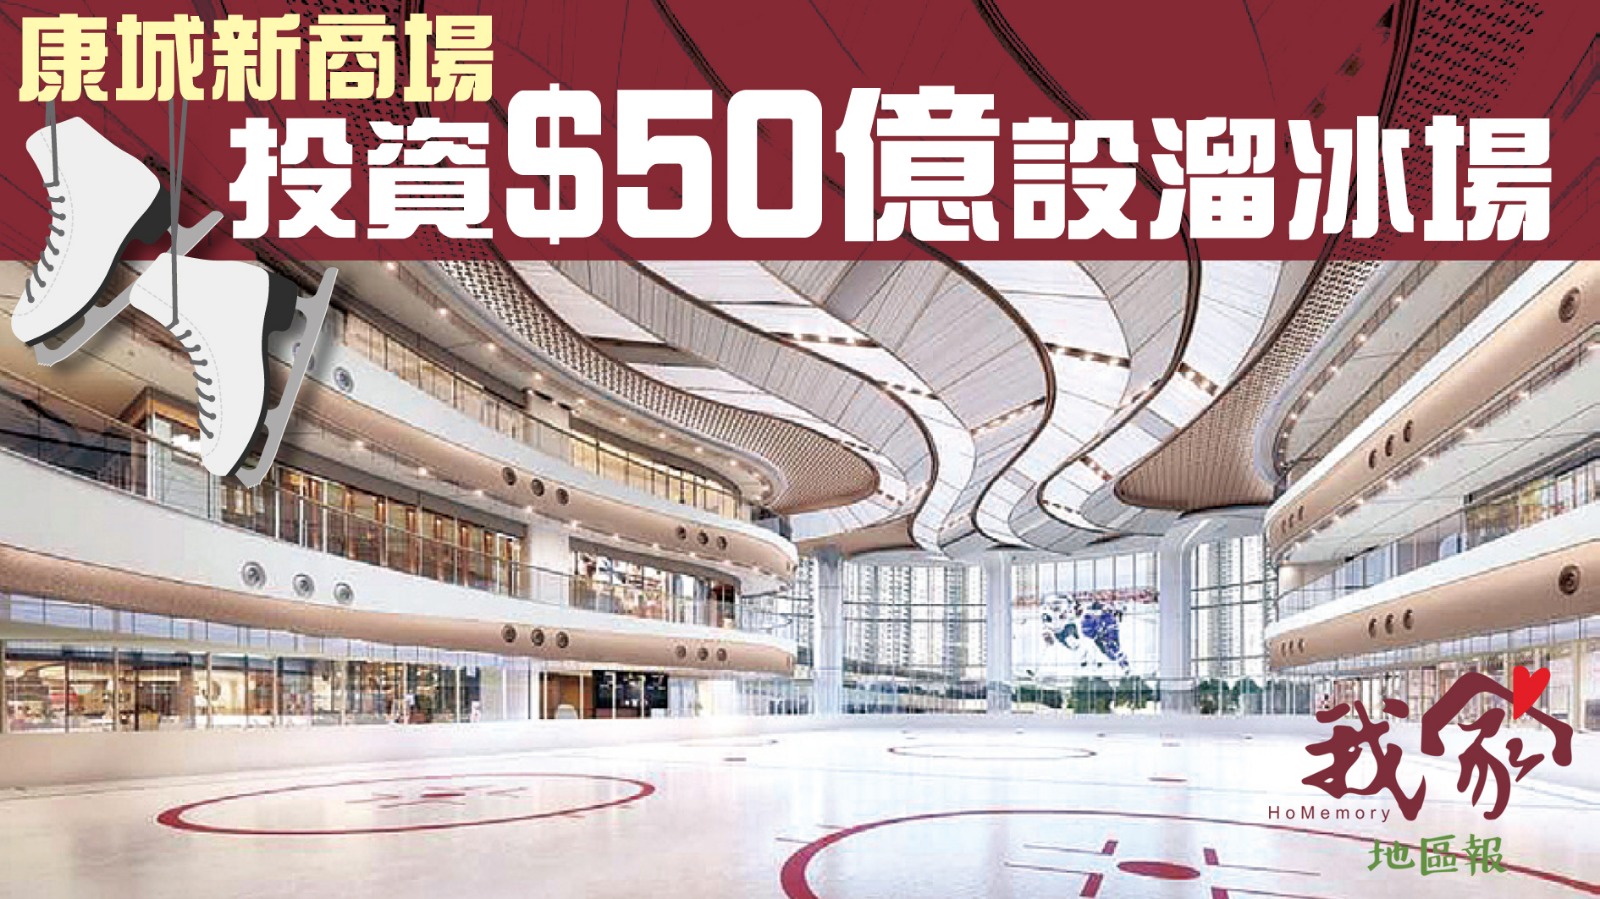 (西貢)康城新商場 投資$50億設溜冰場